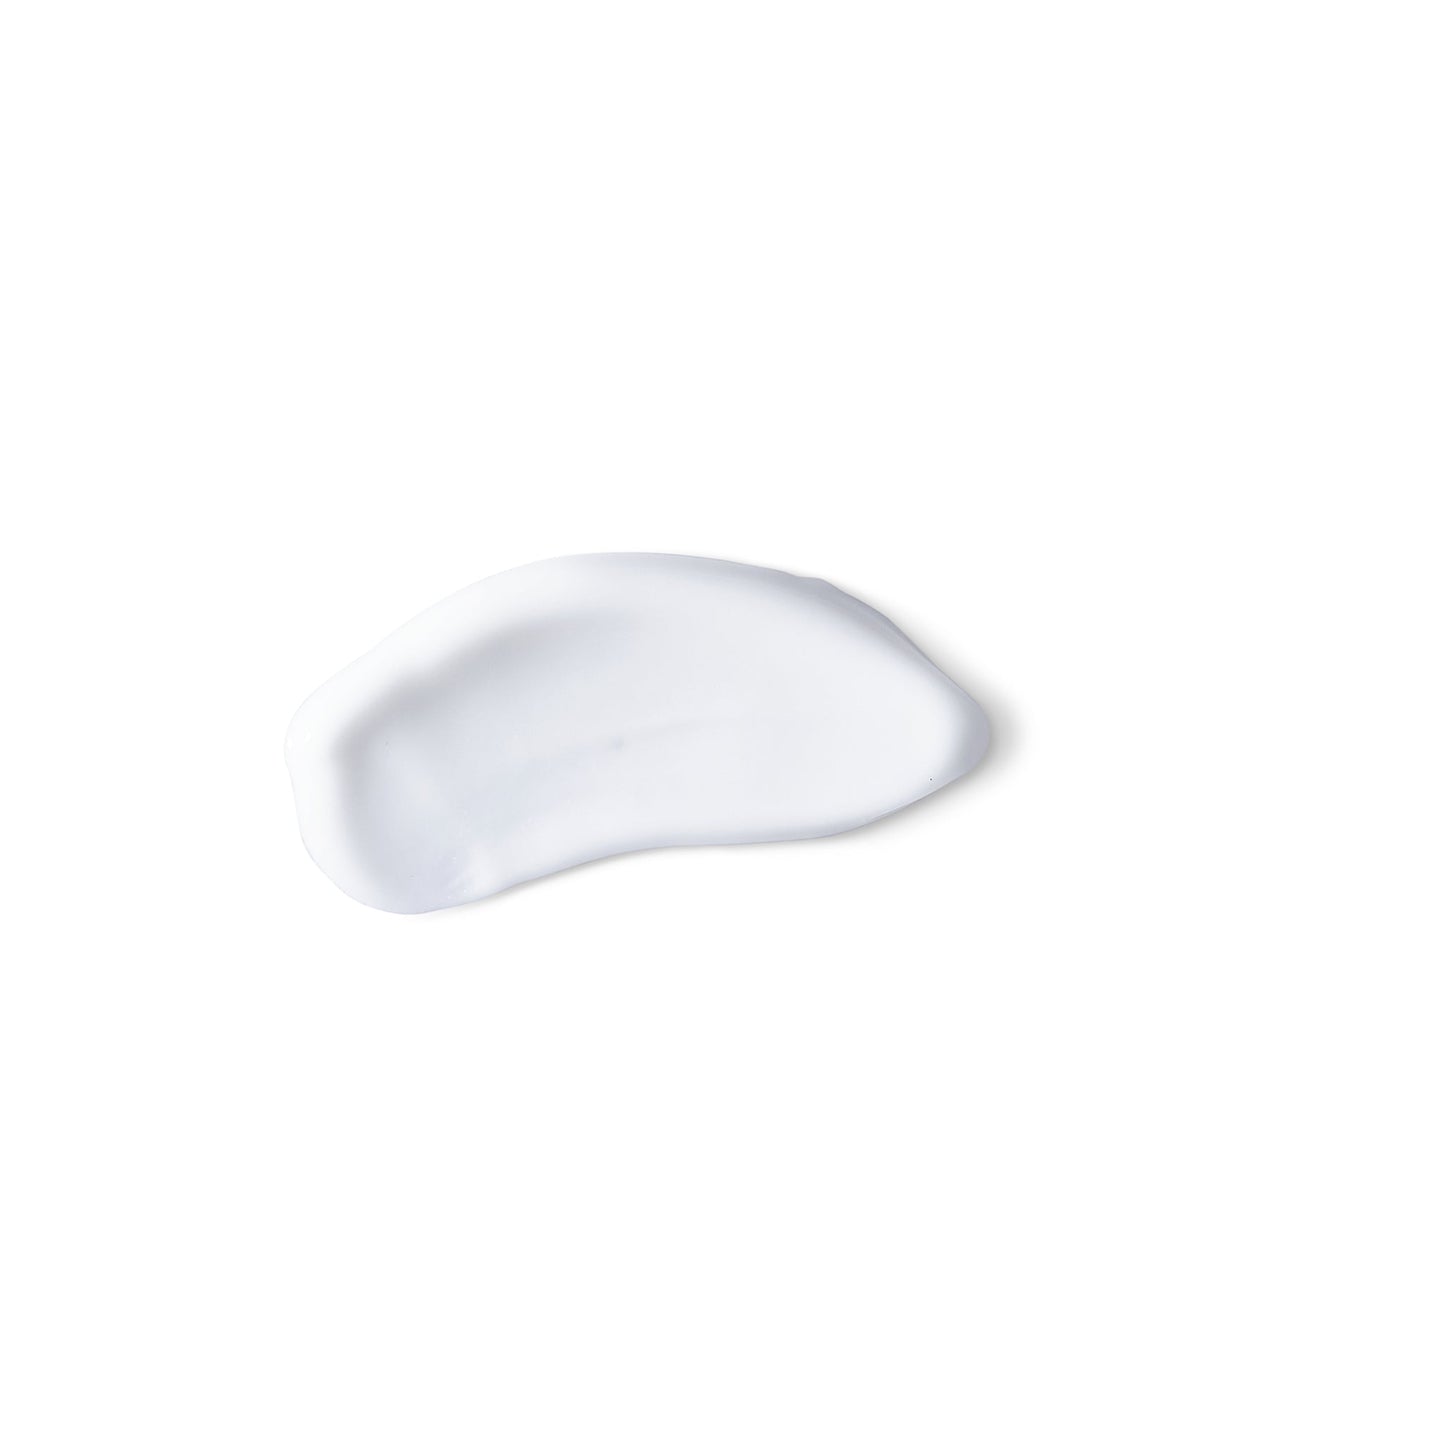 Eine weiße Creme mit der intensiven Feuchtigkeitsbalance | Feuchtigkeitspflege auf weißer Oberfläche, perfekt für trockene Haut und für ein reichhaltiges Feuchtigkeitserlebnis.